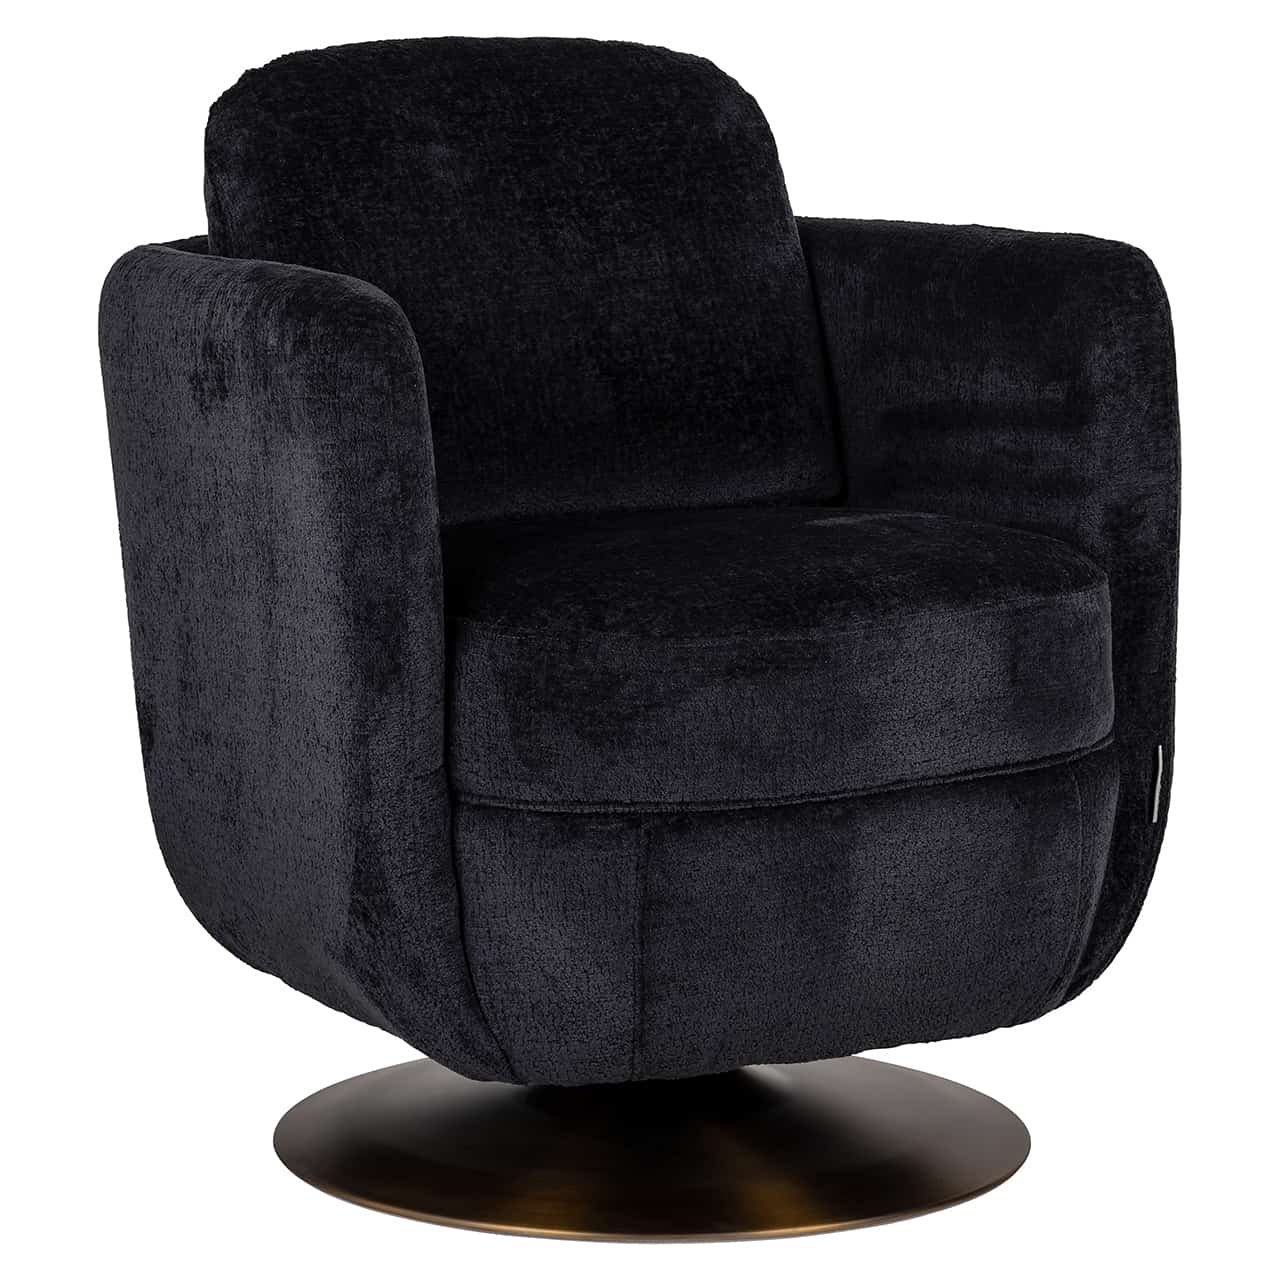 Swivel easy chair Turner black chenille (Bergen 809 black chenille)